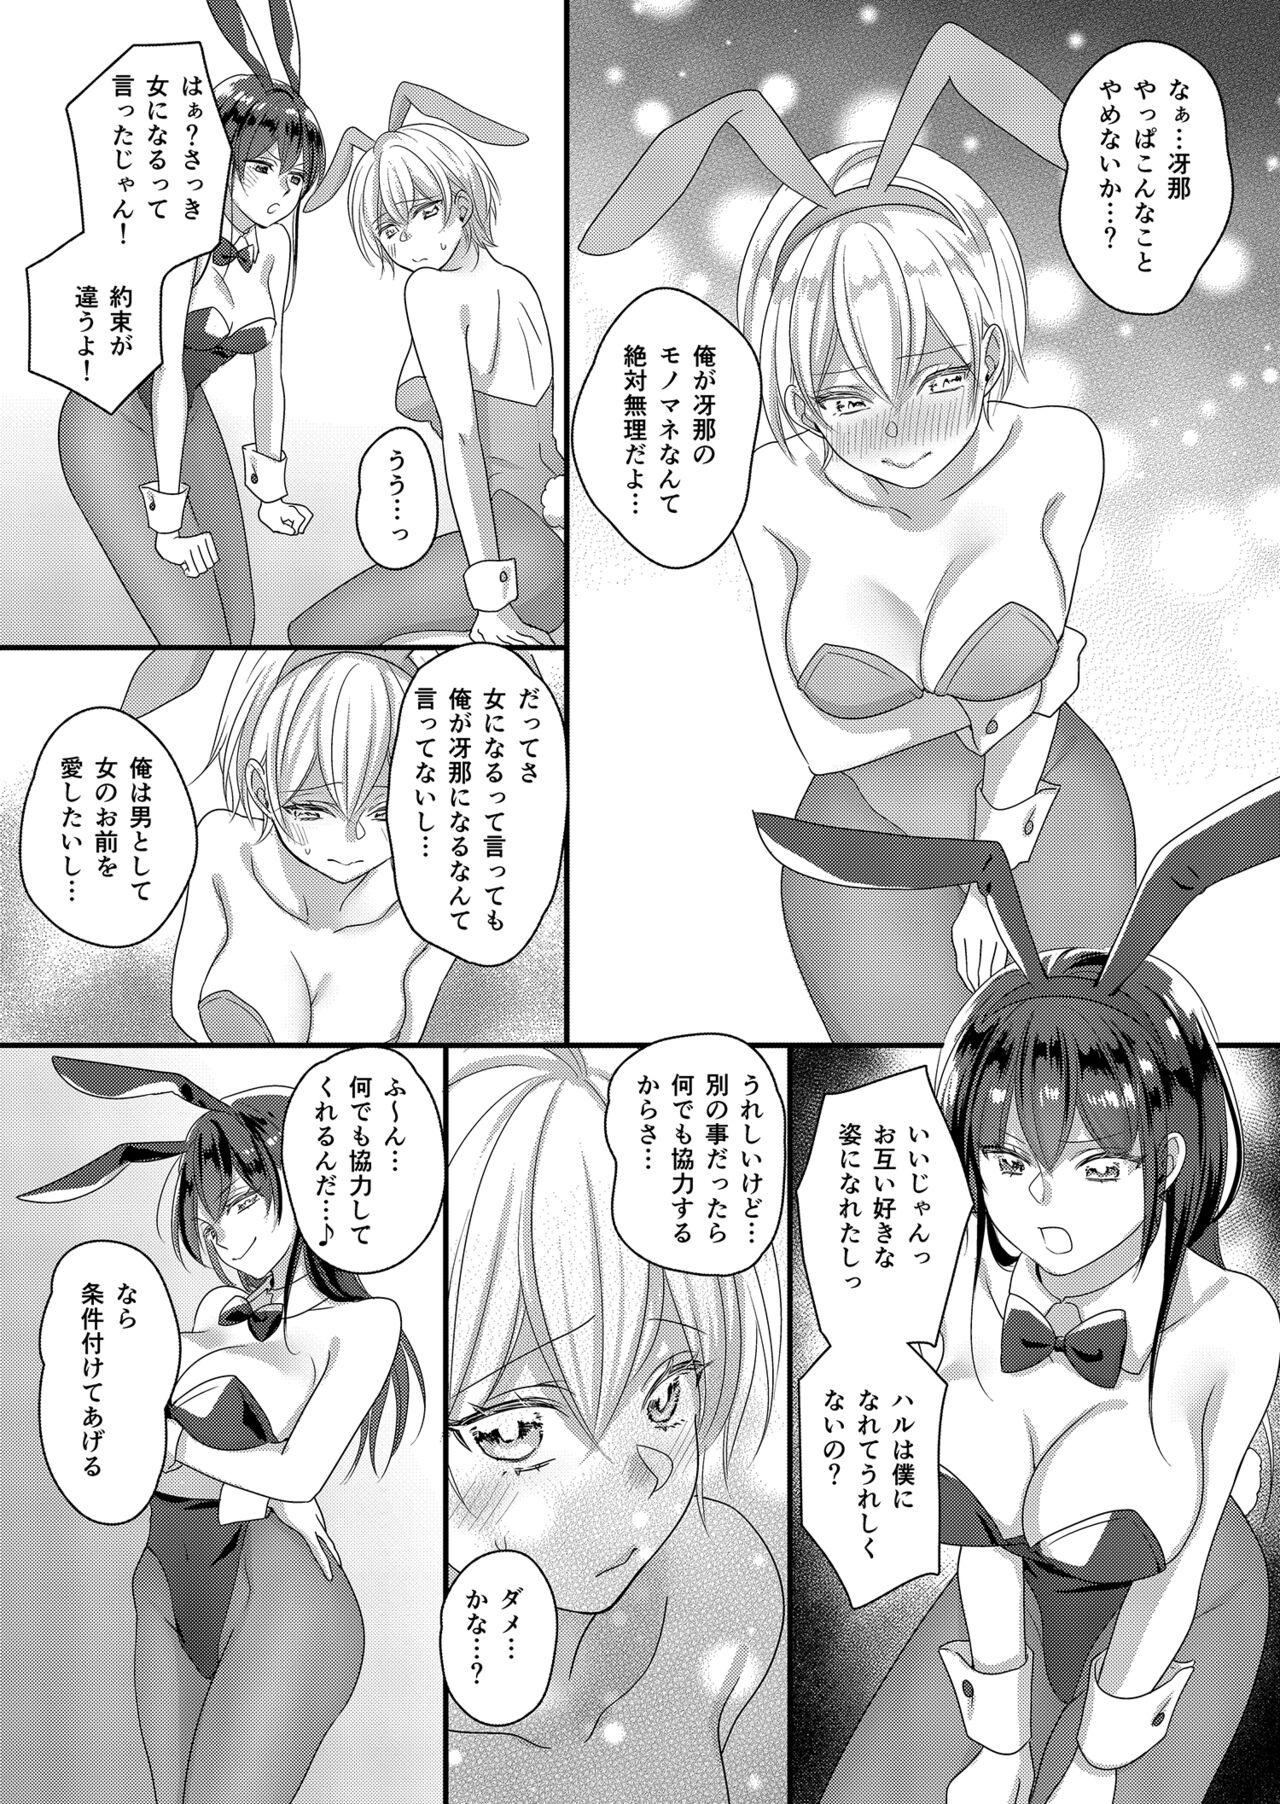 Sucking Dicks Haru to Sana 2 ～Cosplay de Tsunagatta Koi～ - Original Cavalgando - Picture 3